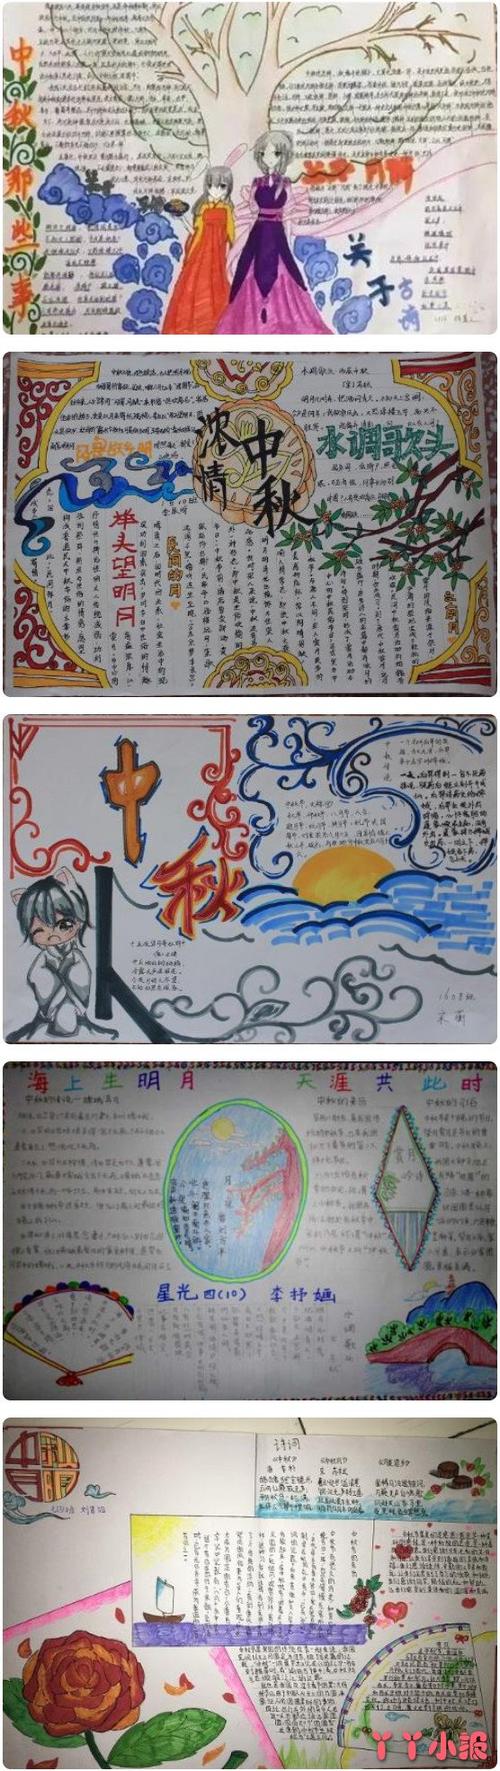 今天我们给大家带来了一张好看的中秋节的手抄报模板图喜欢的小